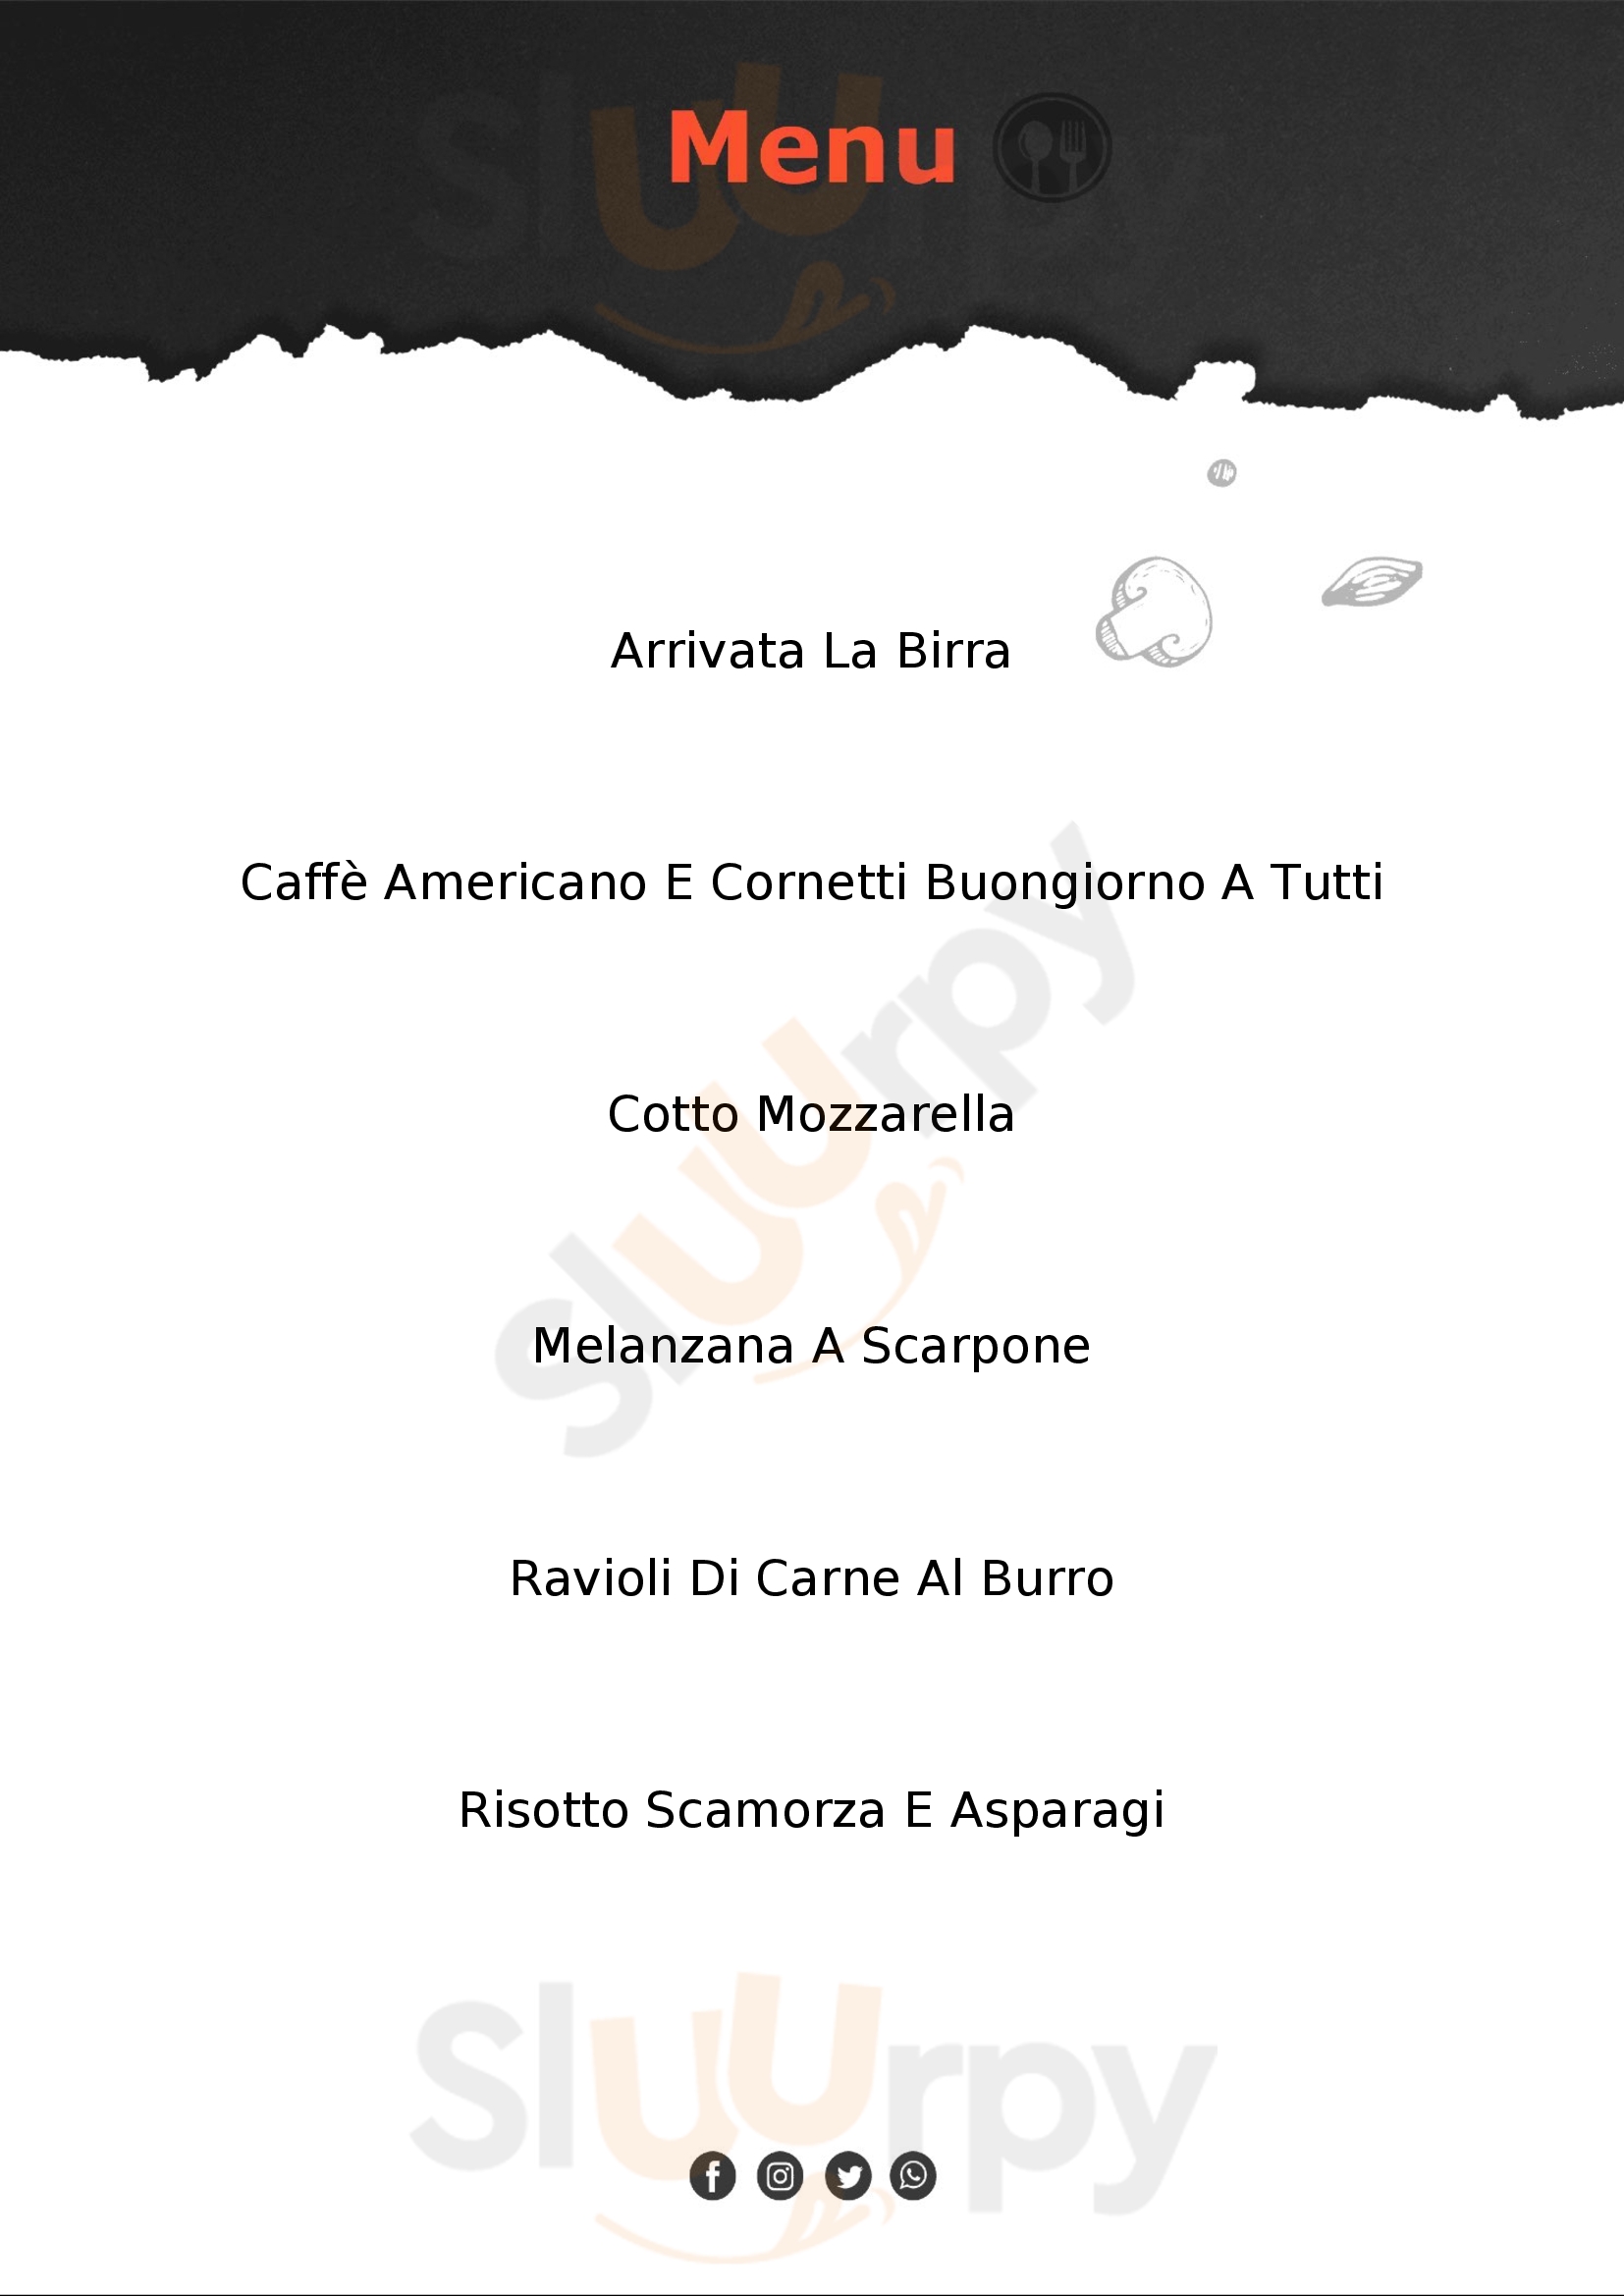 Officina Caffè Pavia menù 1 pagina